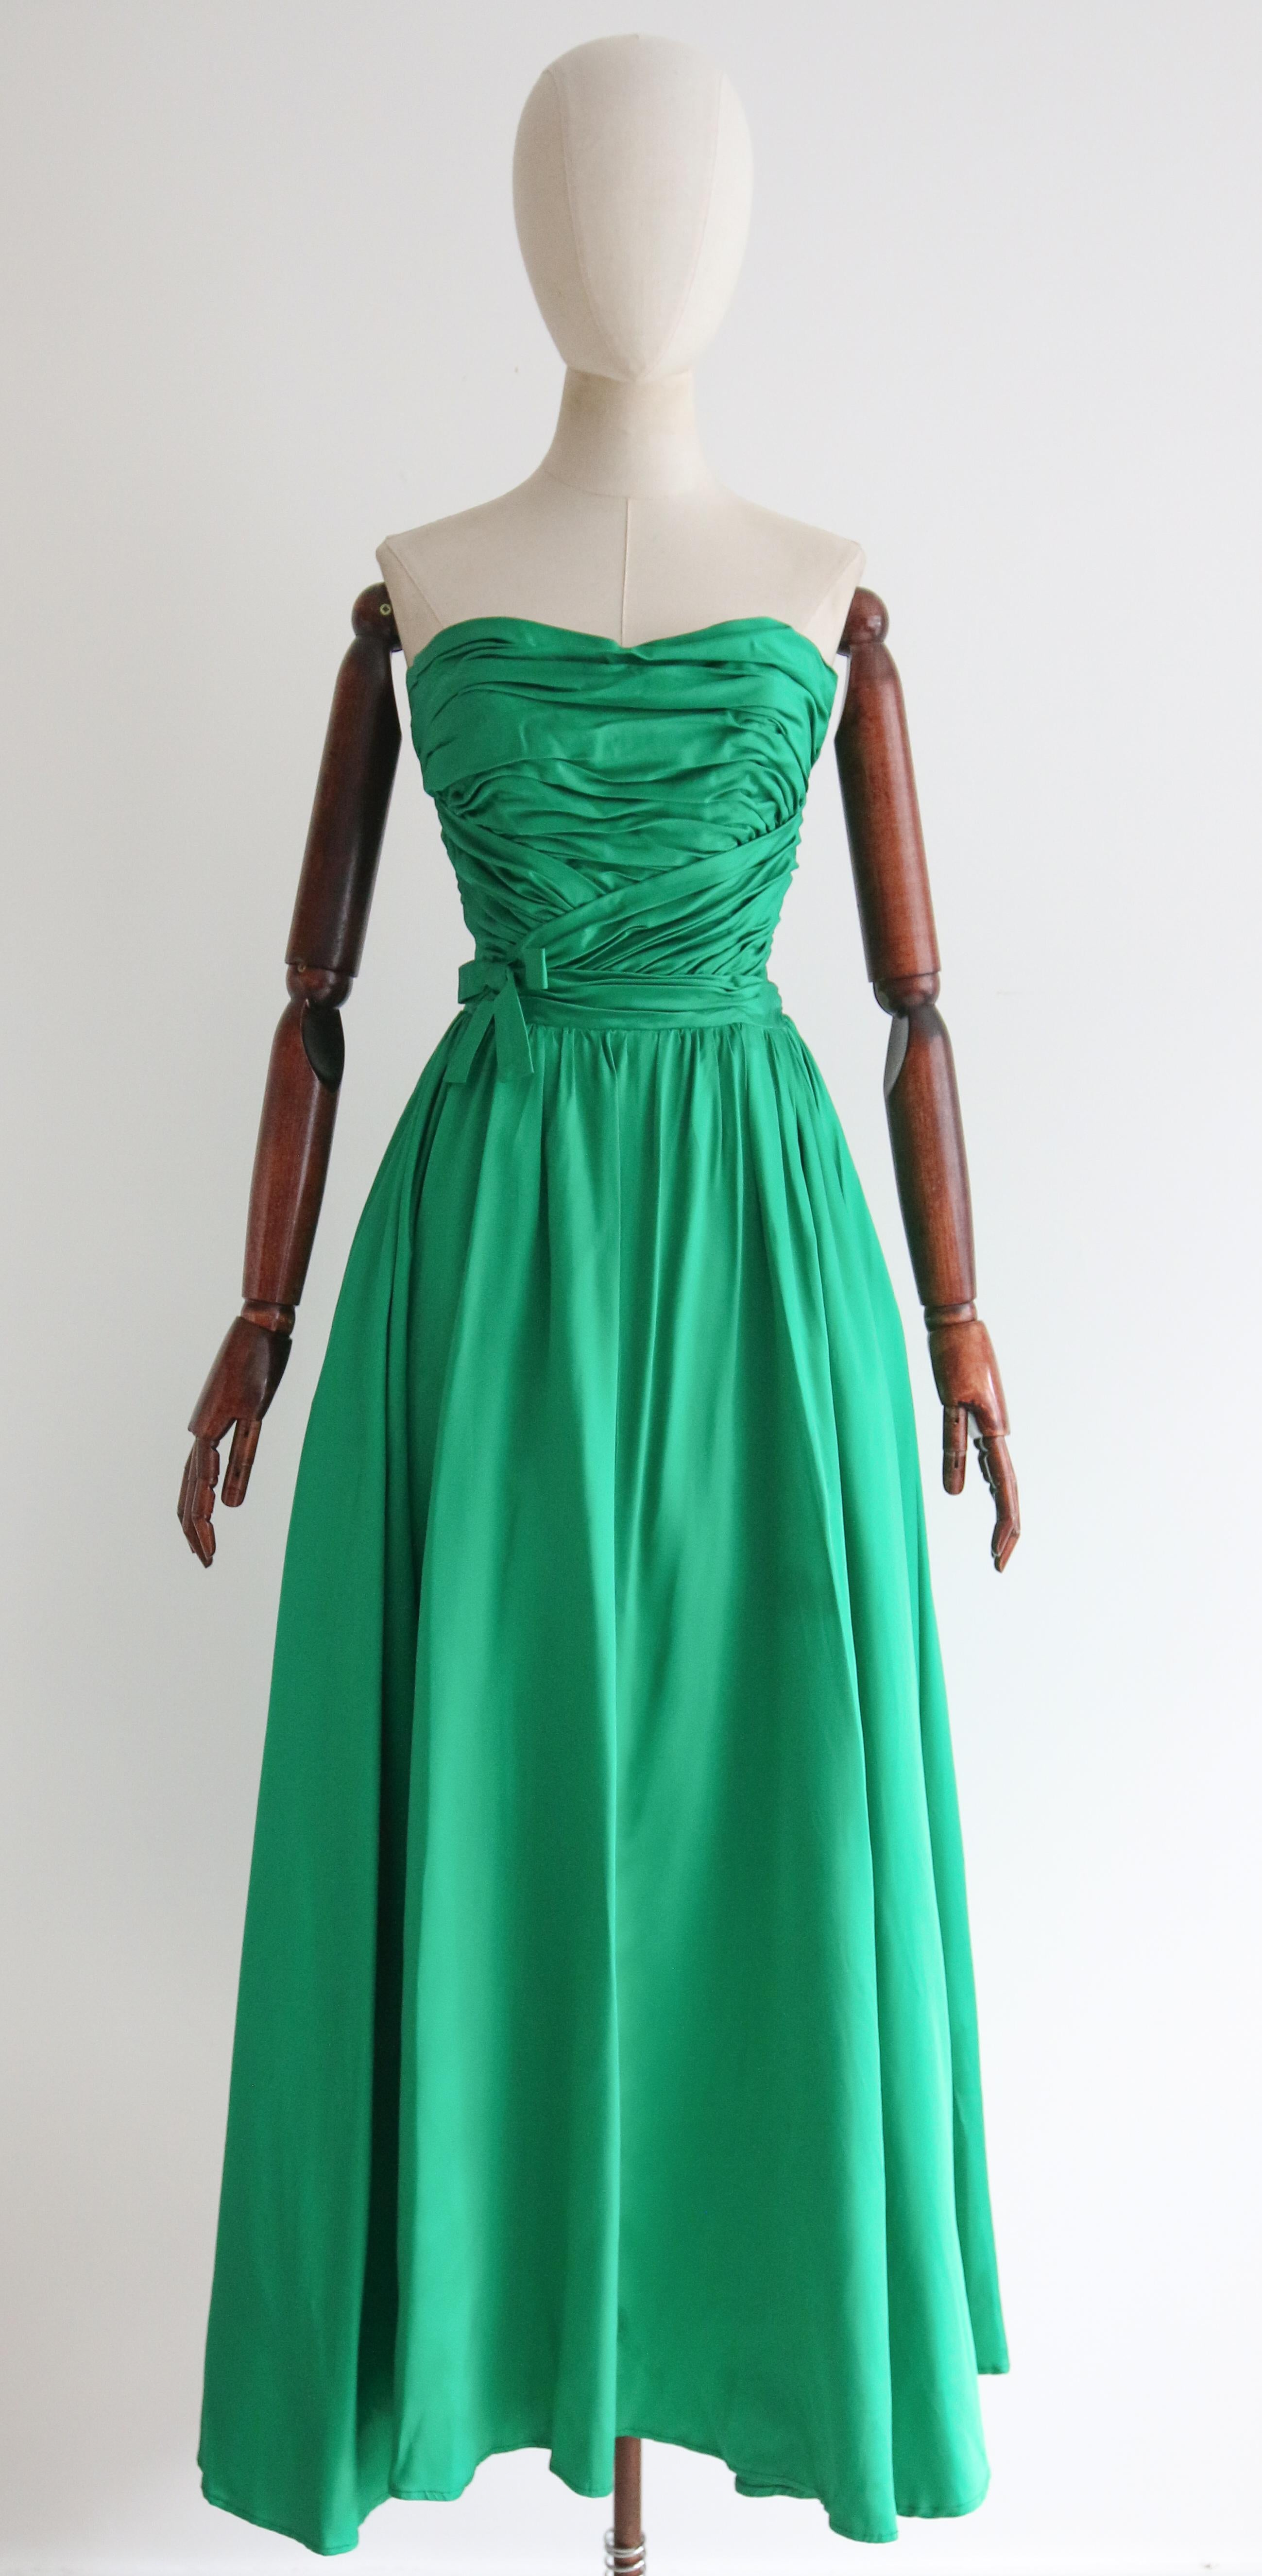 Dieses atemberaubende 1950er-Jahre-Duchess-Satin-Kleid in einem auffälligen Smaragdgrün, akzentuiert durch geraffte Falten und eine dekorative Schleife, ist das perfekte Stück für einen besonderen Anlass. 

Der trägerlose Ausschnitt des Kleides wird